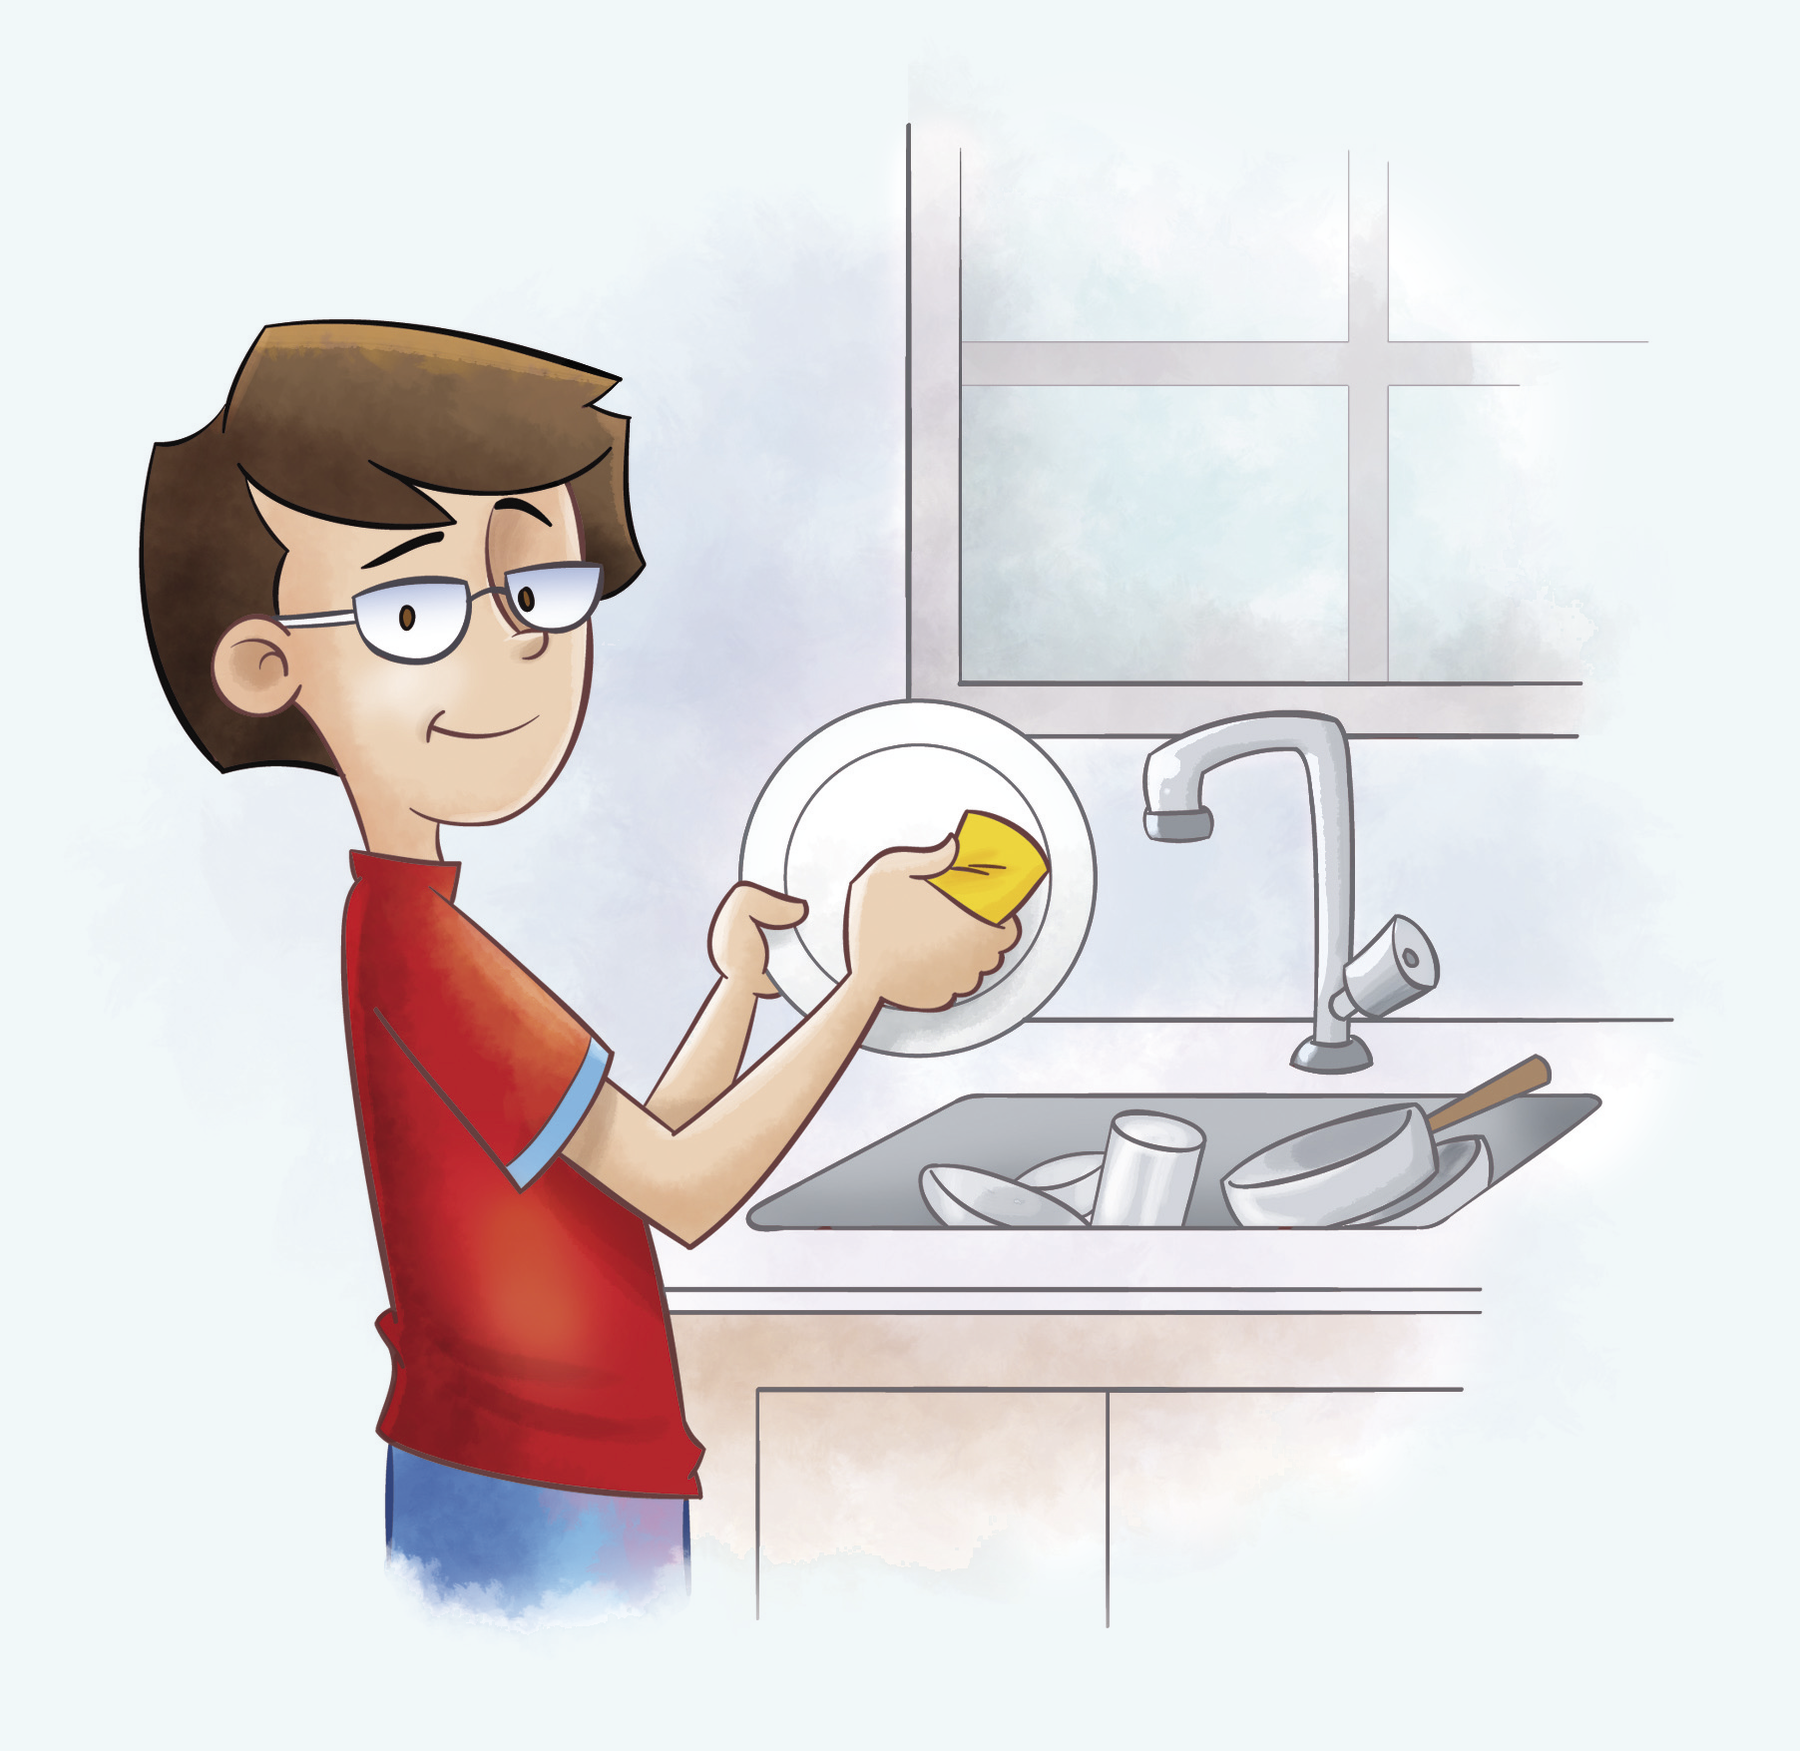 Ilustração. Menino branco de cabelo castanho liso, óculos e camiseta vermelha está ensaboando um prato. A torneira está fechada.